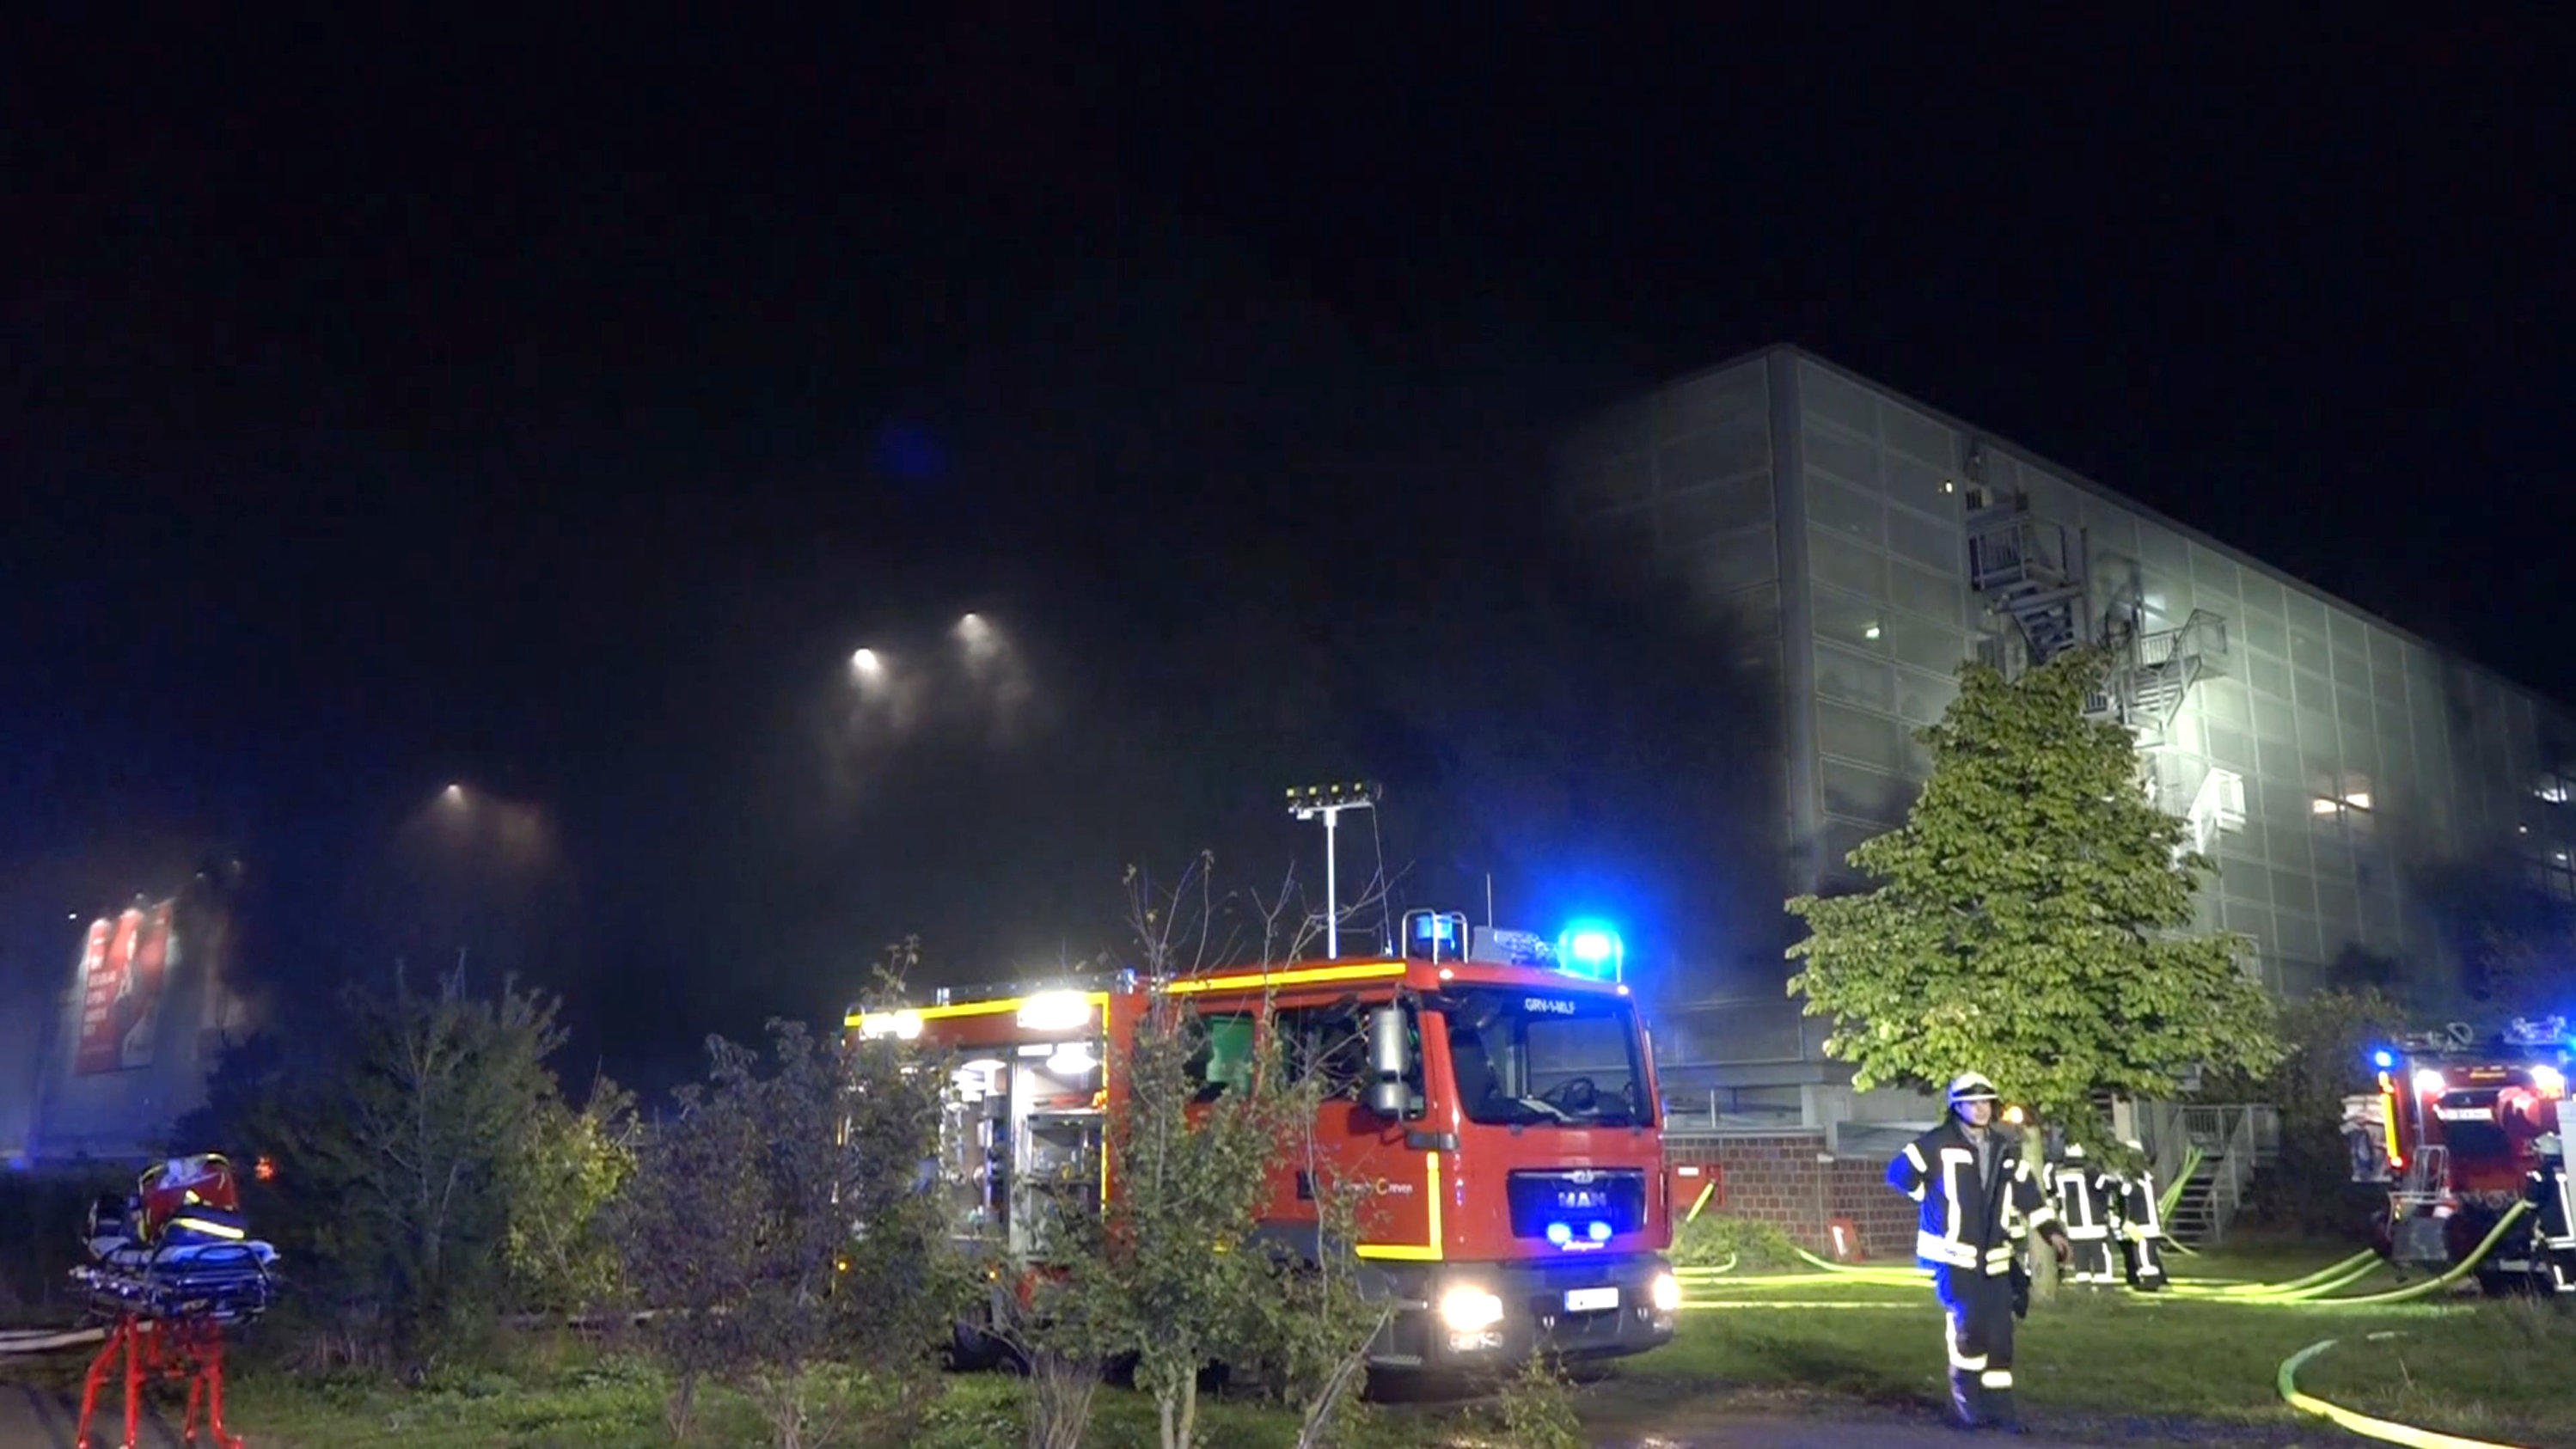 14.10.2019, Münster/Osnabrück: Die Feuerwehr löscht einen Großbrand in dem Parkhaus am Flughafen Münster / Osnabrück. Laut eines Sprechers der Feuerwehr sind zwischen 40 und 50 Autos in Brand geraten. Verletze gebe es bisher keine. Foto: Nord-West-Me